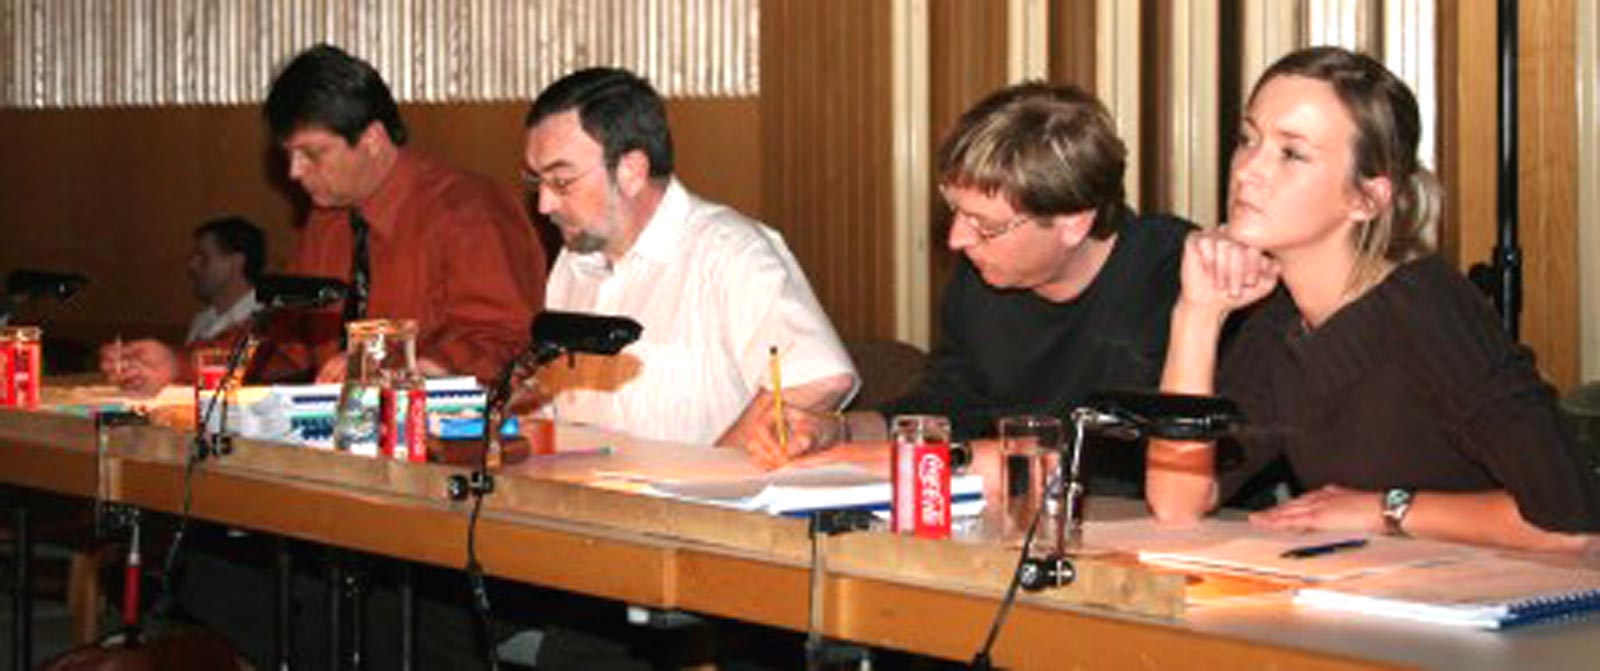 Konzertwertung 2006 in Gunskirchen (Jury)